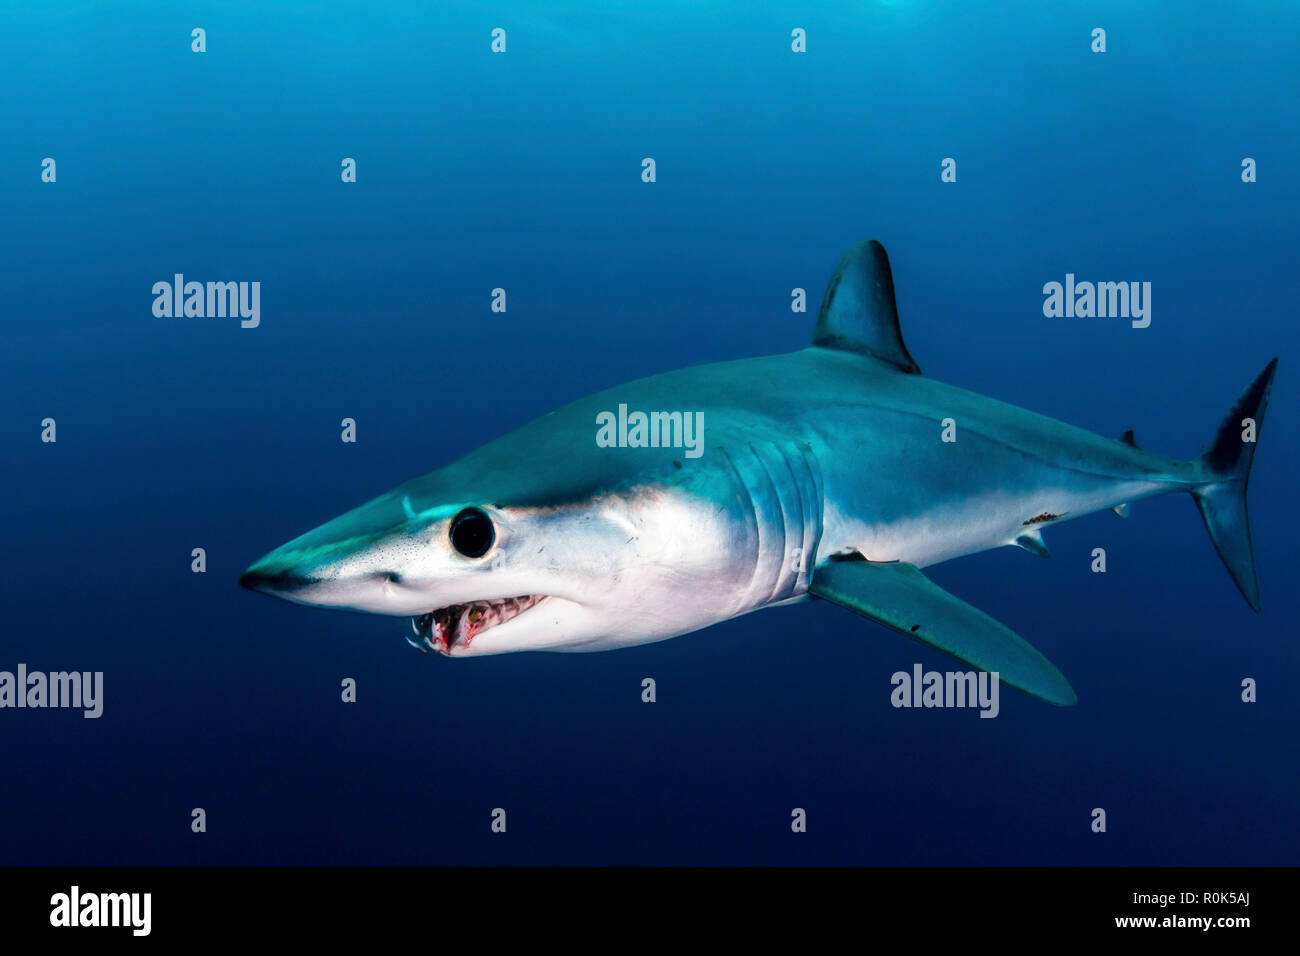 Короткоплавниковая акула-мако